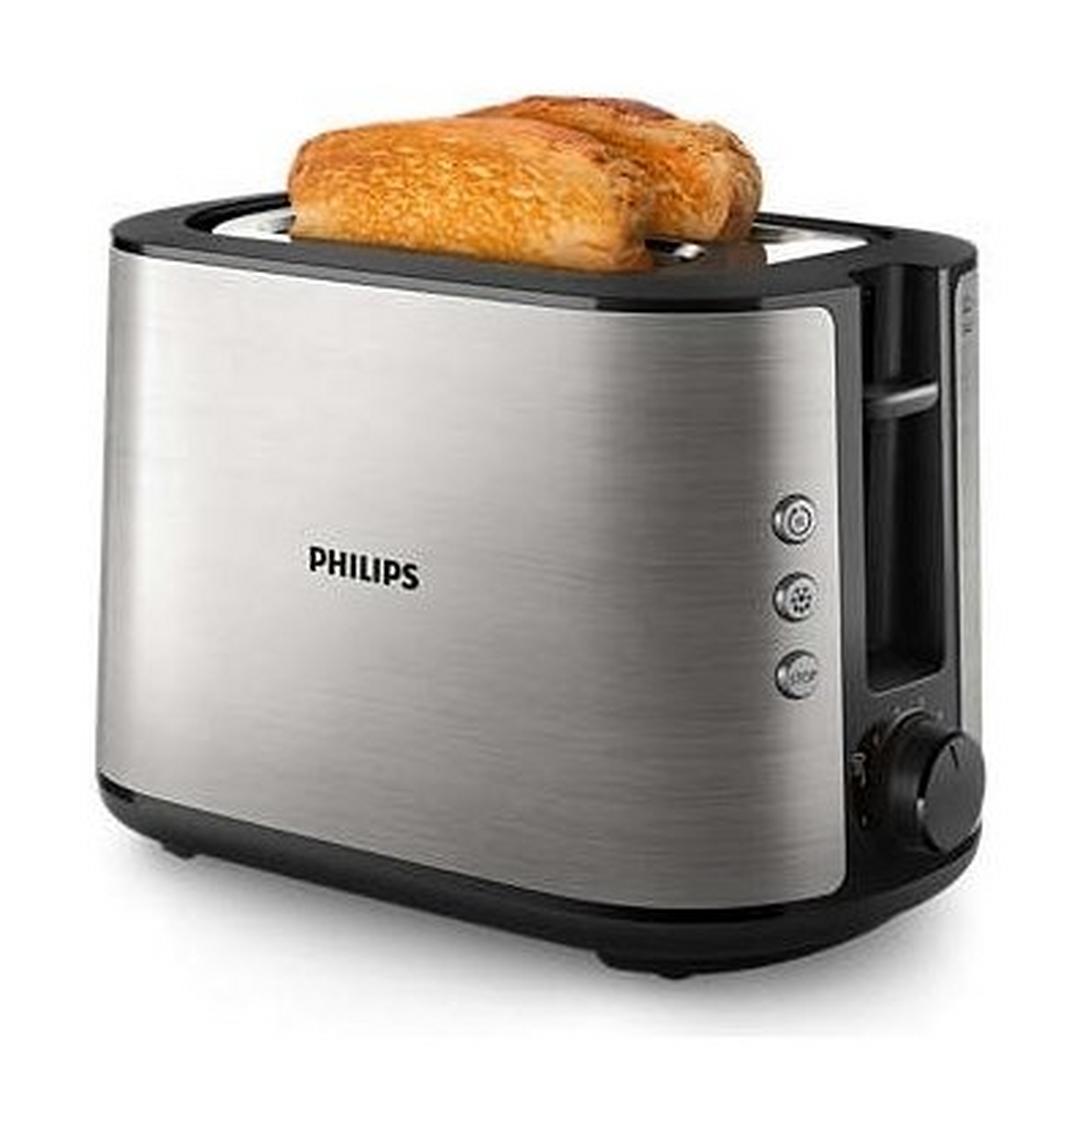 محمصة الخبز فيليبس من مجموعة فيفا معدني بالكامل - (HD2650/92)